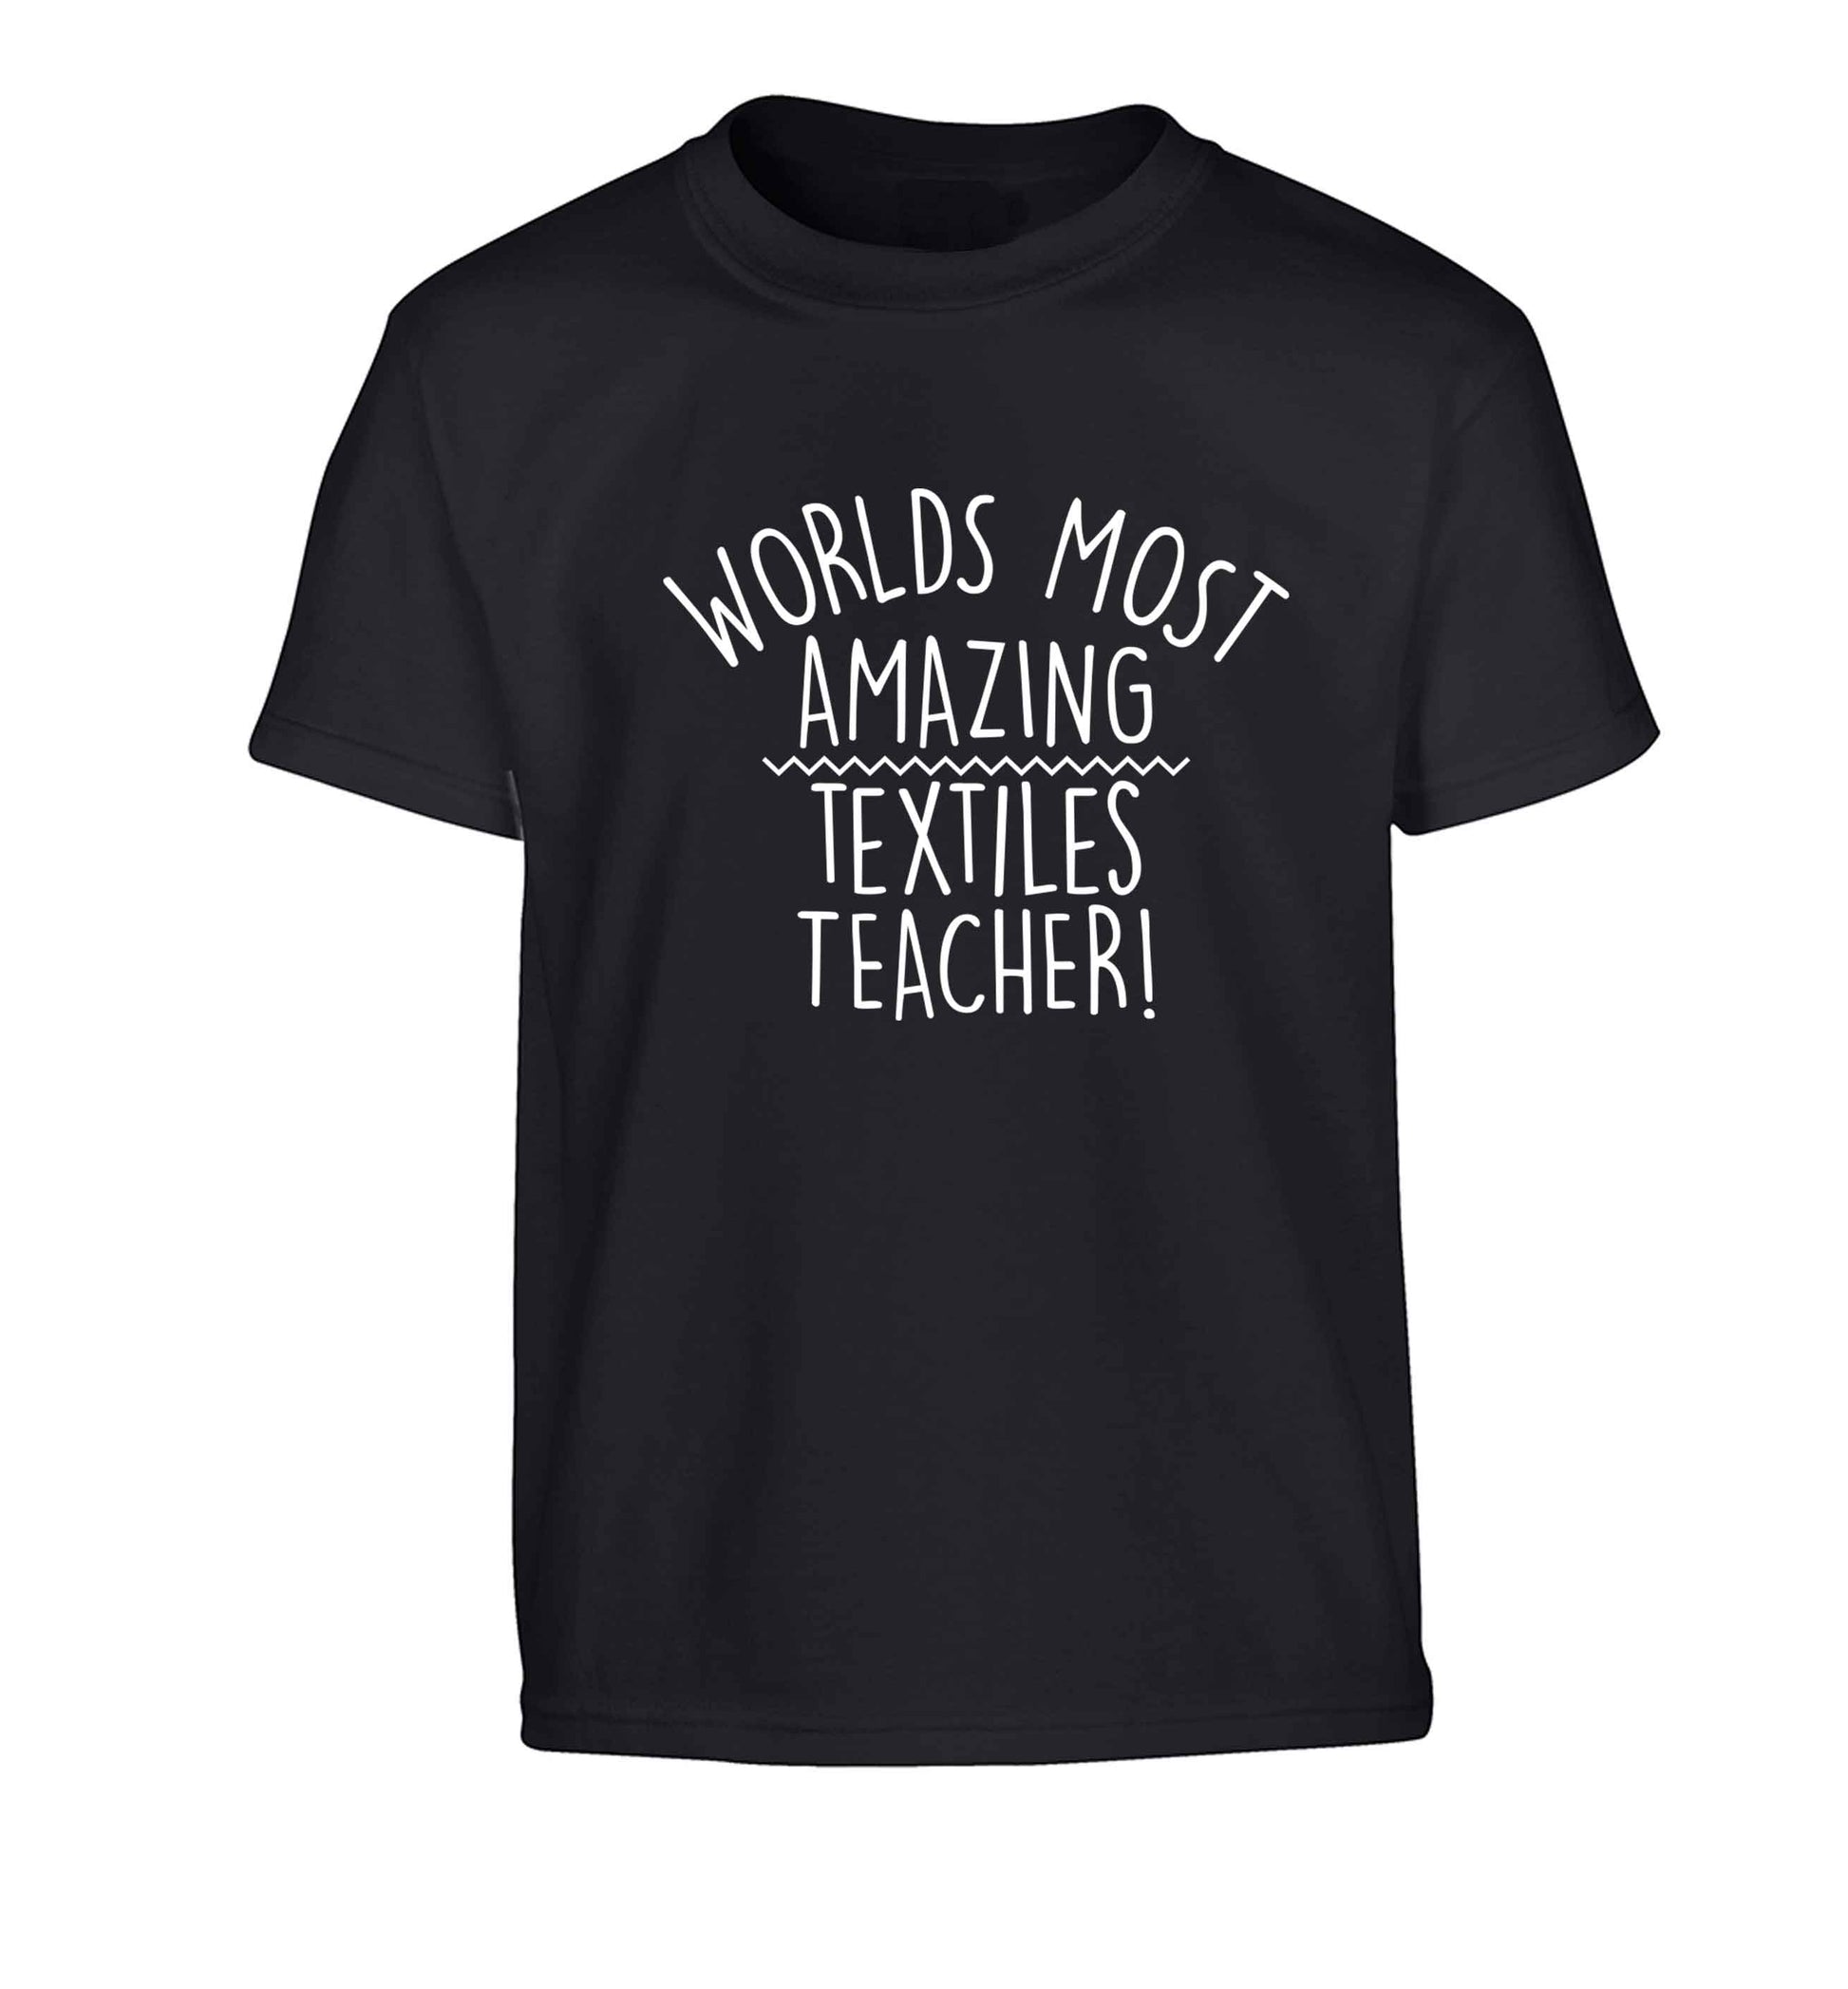 Worlds most amazing textiles teacher Children's black Tshirt 12-13 Years